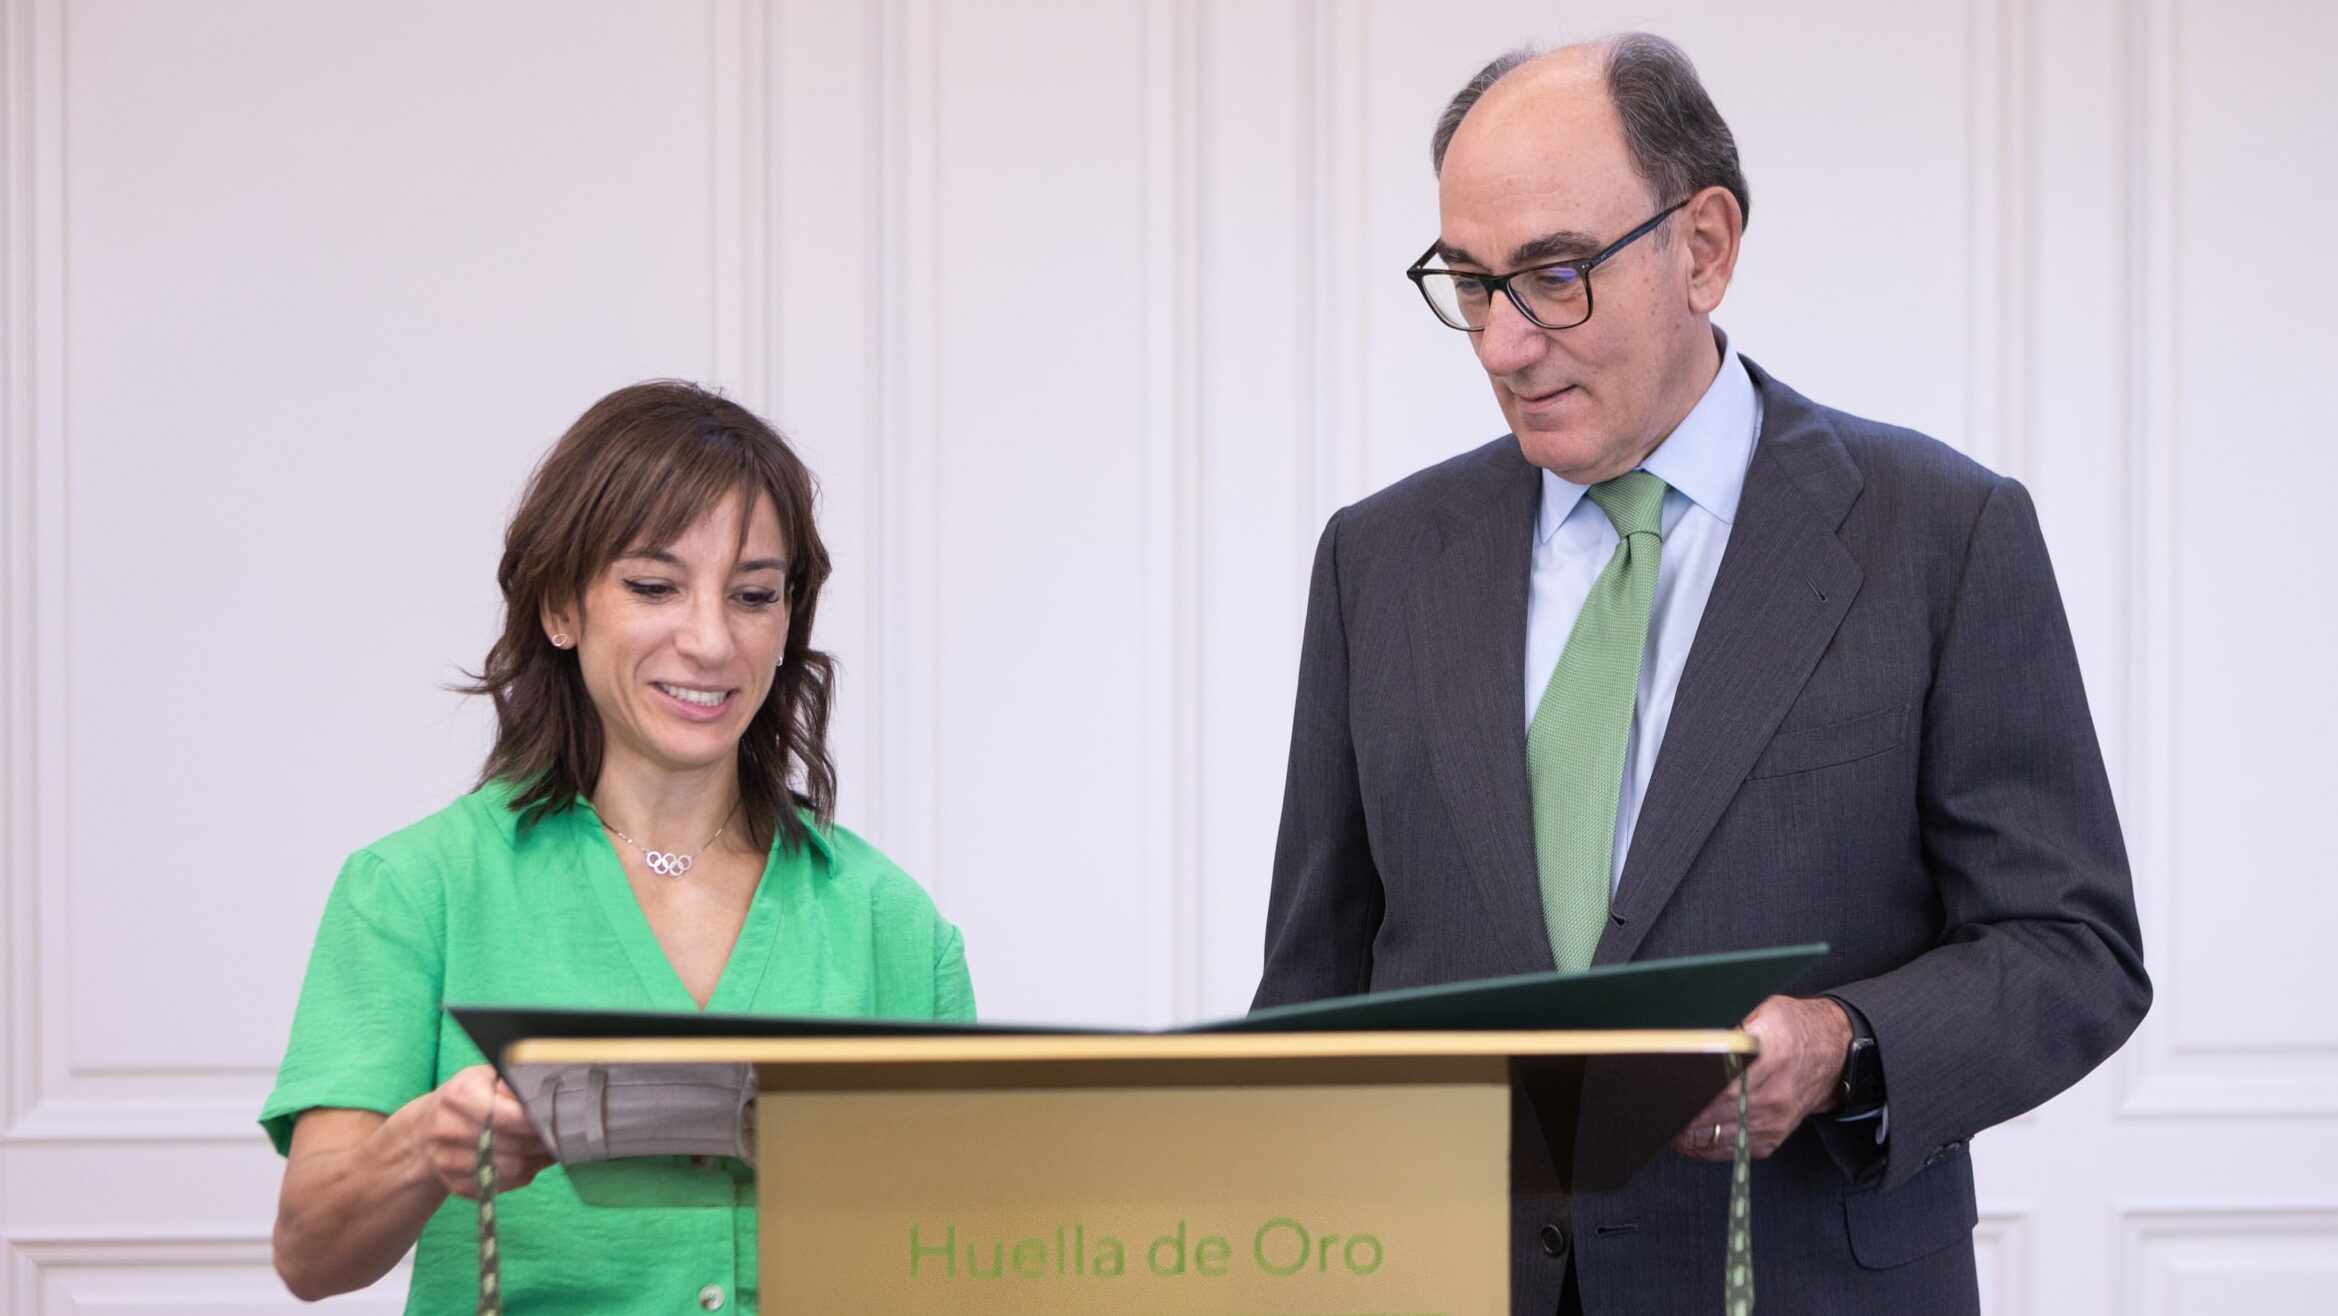 Sandra Sánchez recibe de la mano de Ignacio Galán el diploma “Huella de Oro Iberdrola”